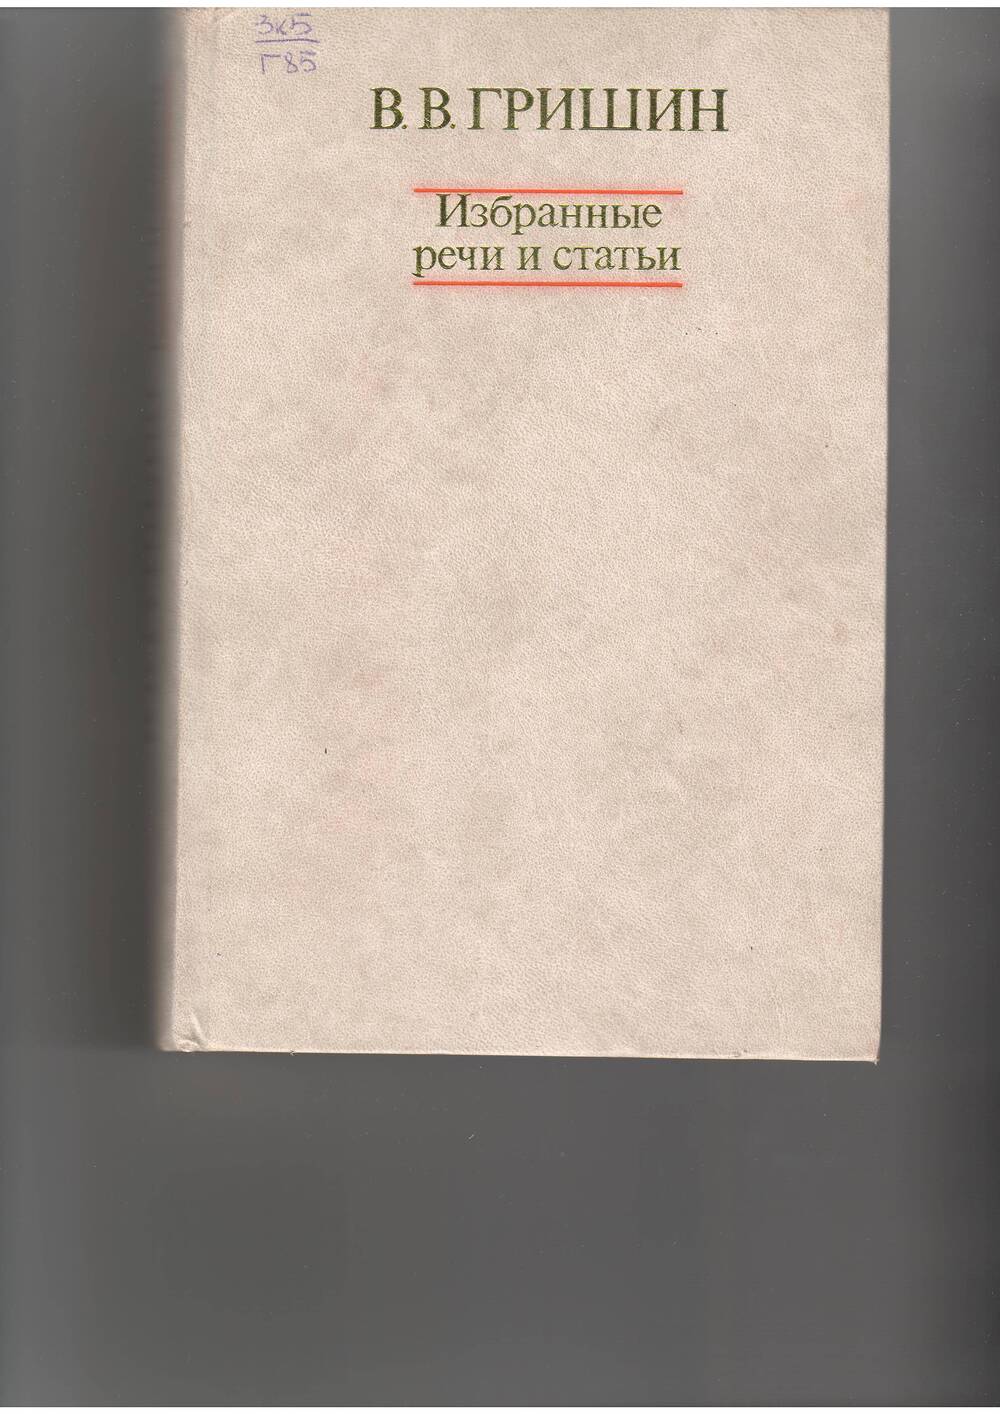 книга Гришин В . Избранные речи и статьи.. - М: Политлит,1979.